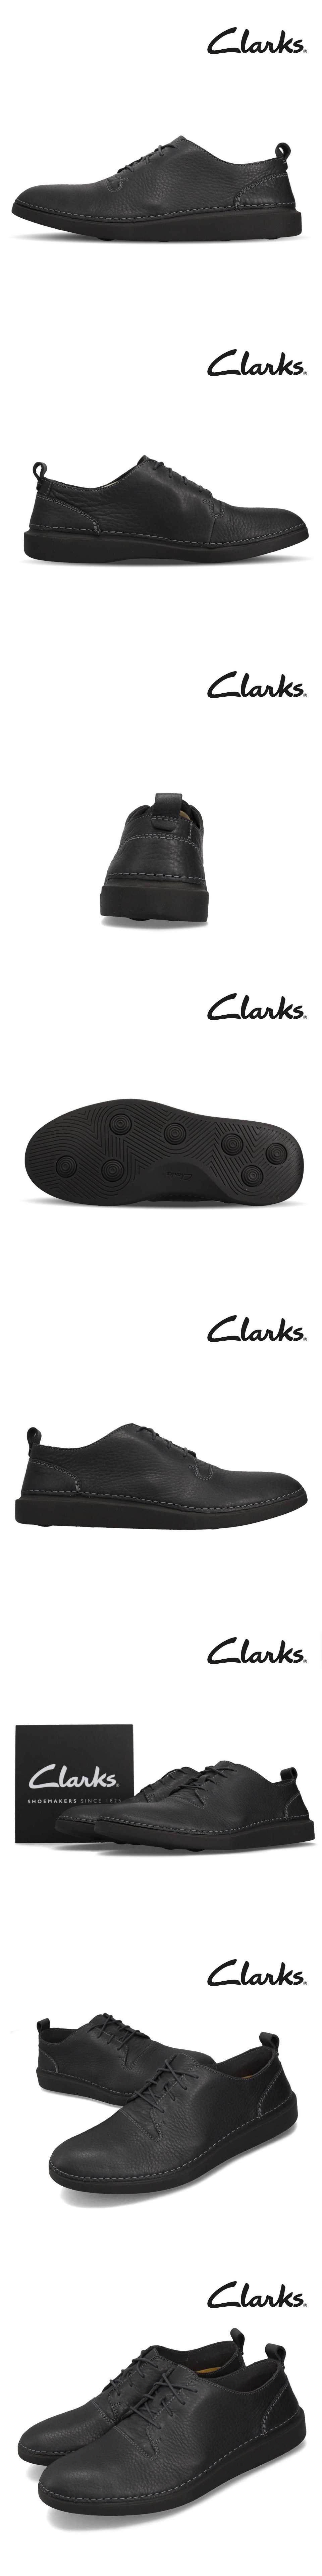 Clarks 休閒鞋 Hale Lace 皮革 男鞋